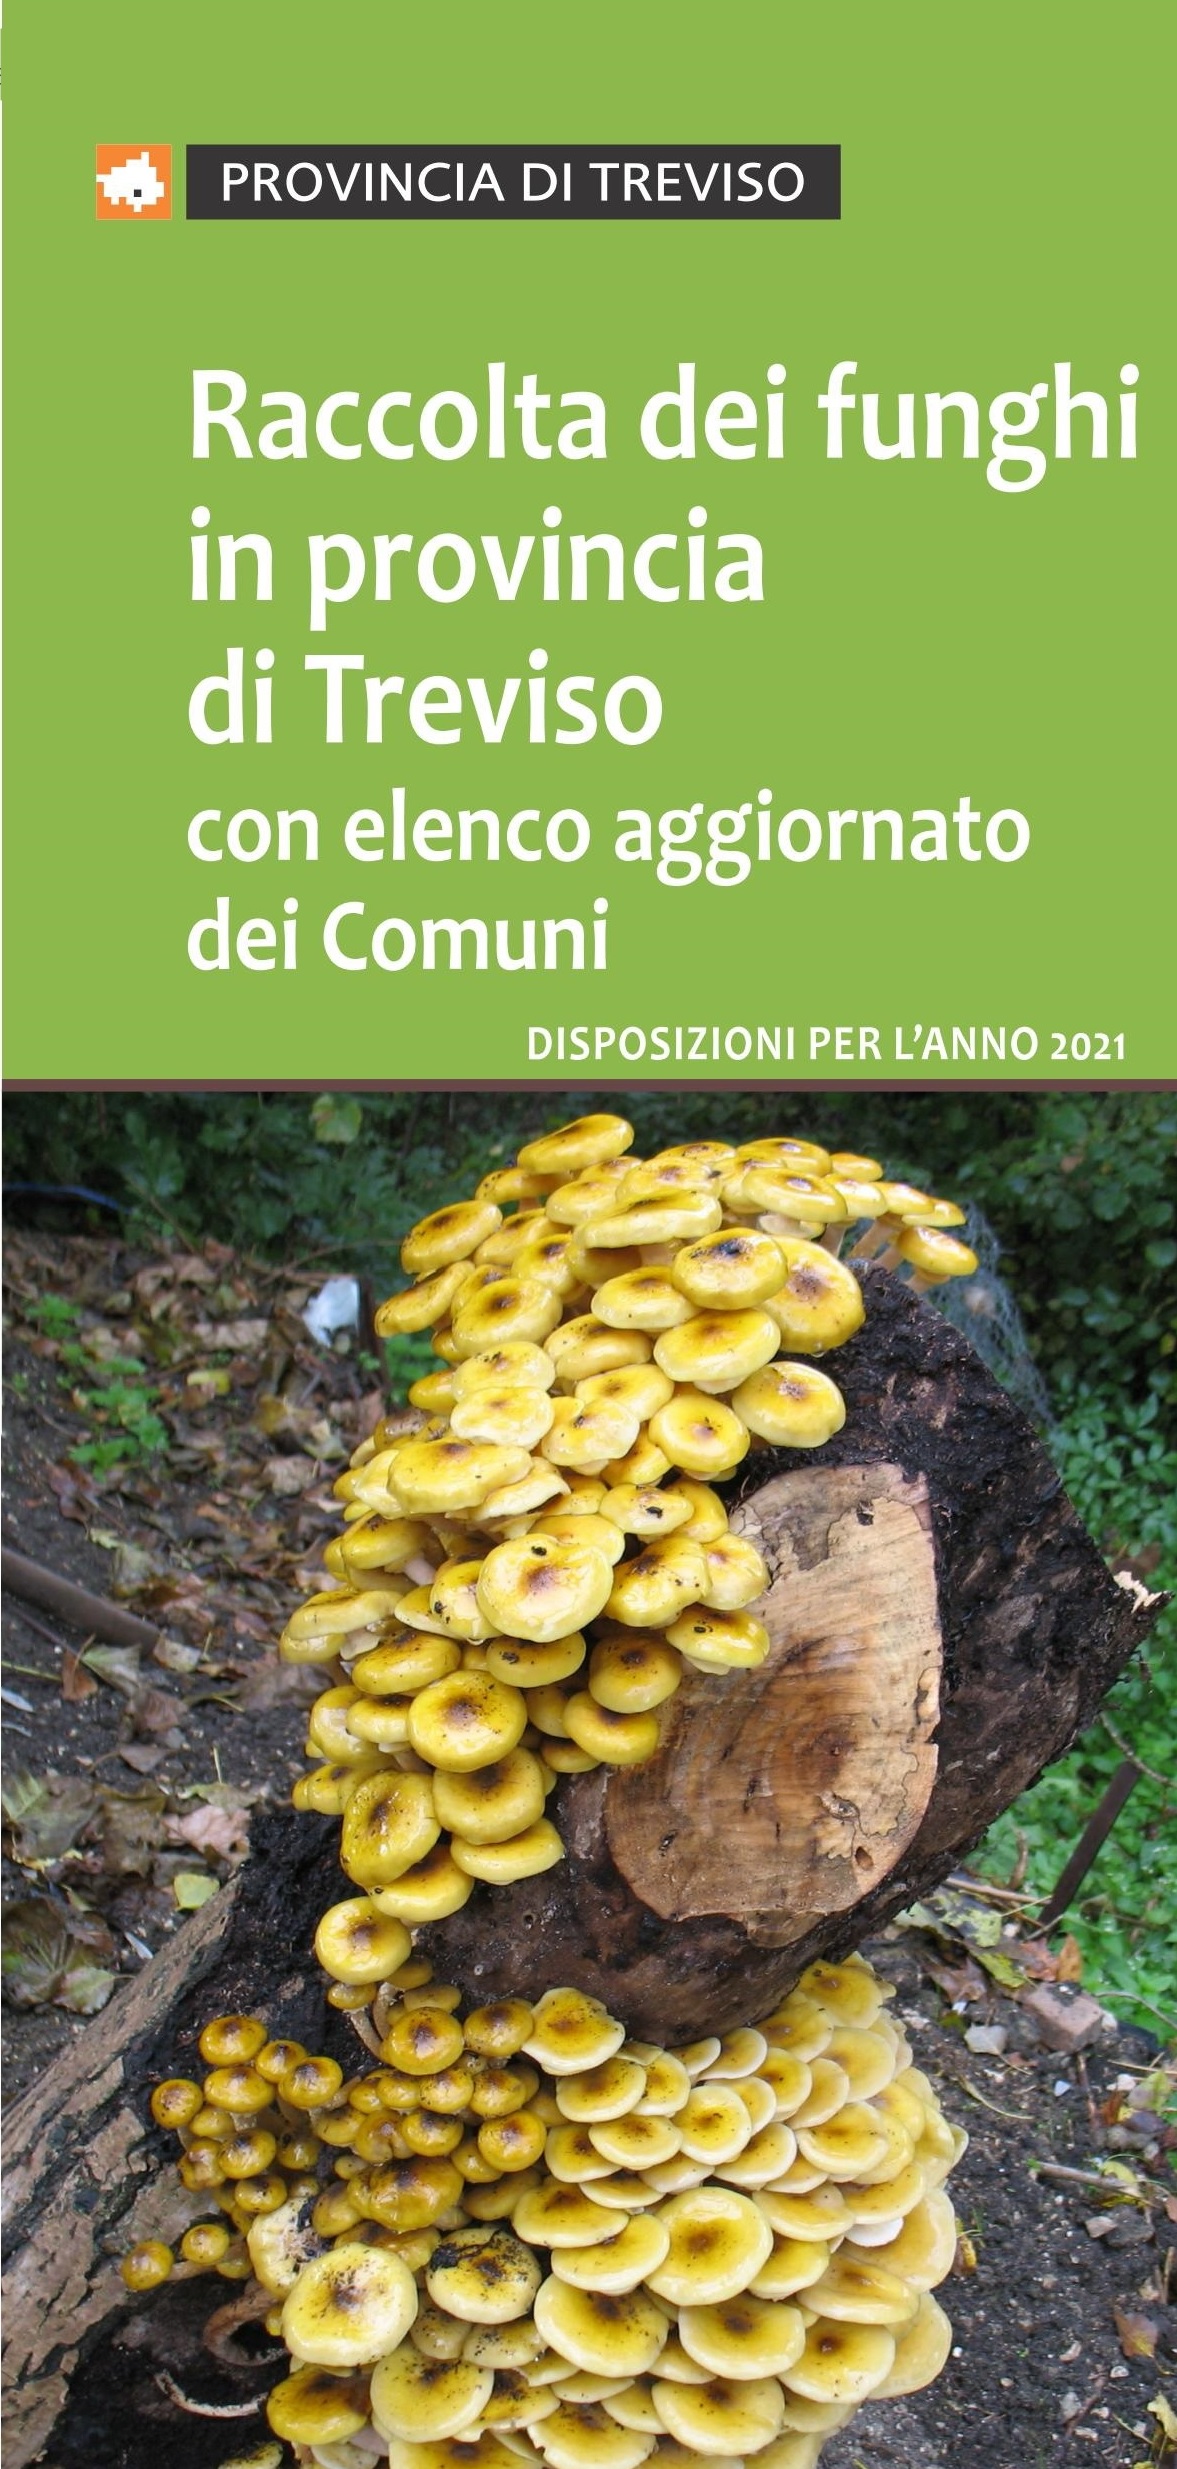 Raccolta dei funghi in provincia di Treviso, disposizioni per l’anno 2021